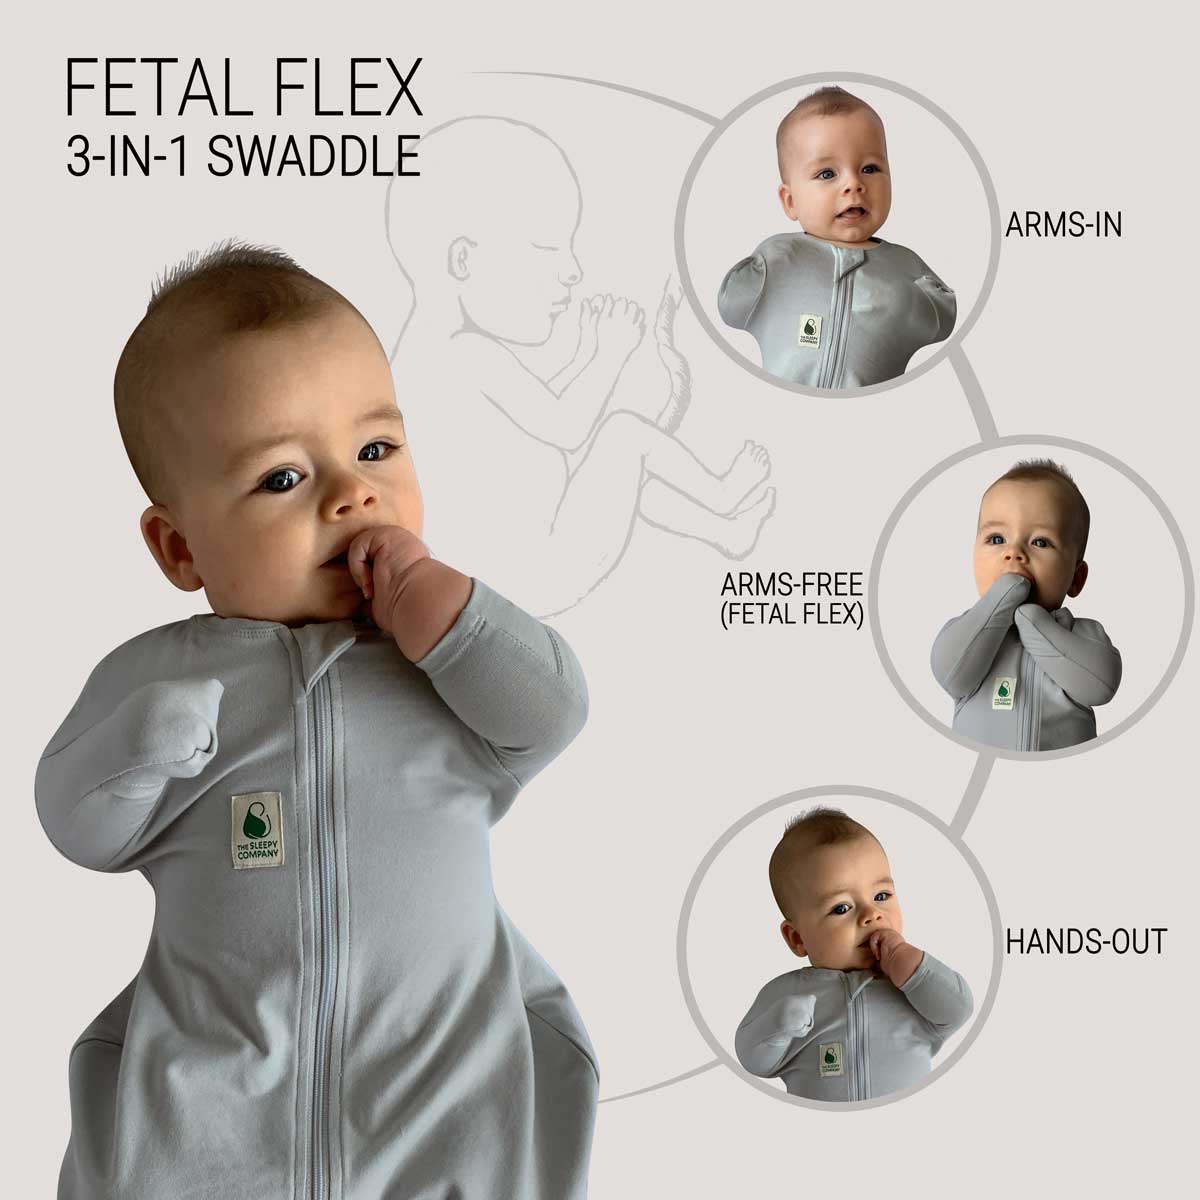 3-IN-1 FX (Fetal Flex) Swaddle